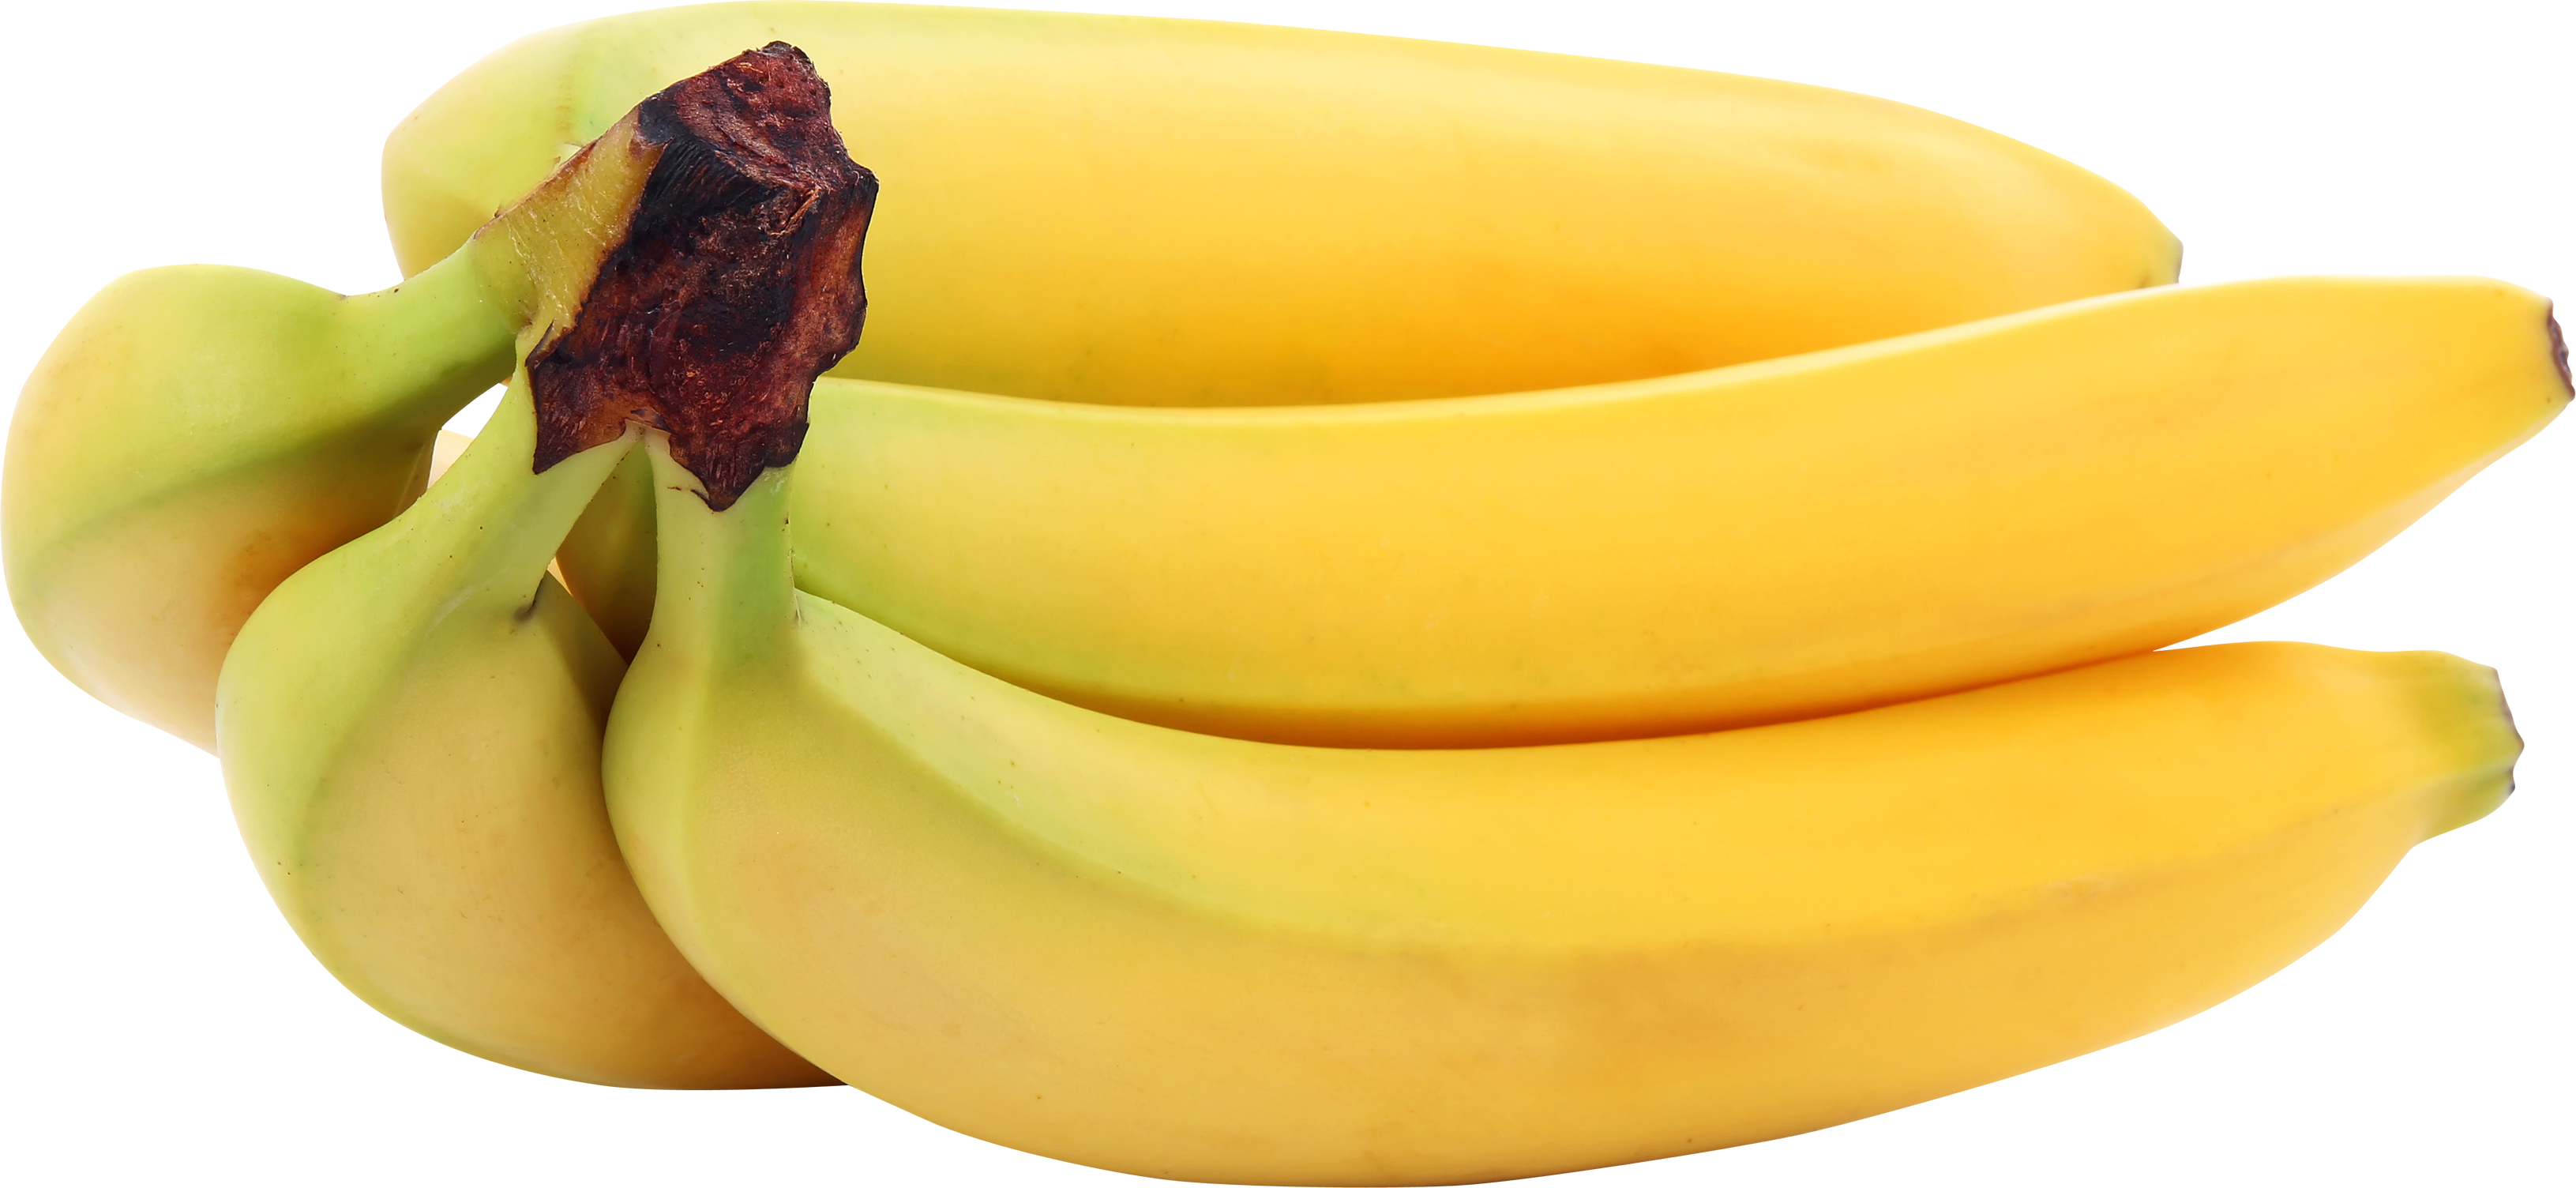 Banana Png Image - Banana Png - HD Wallpaper 